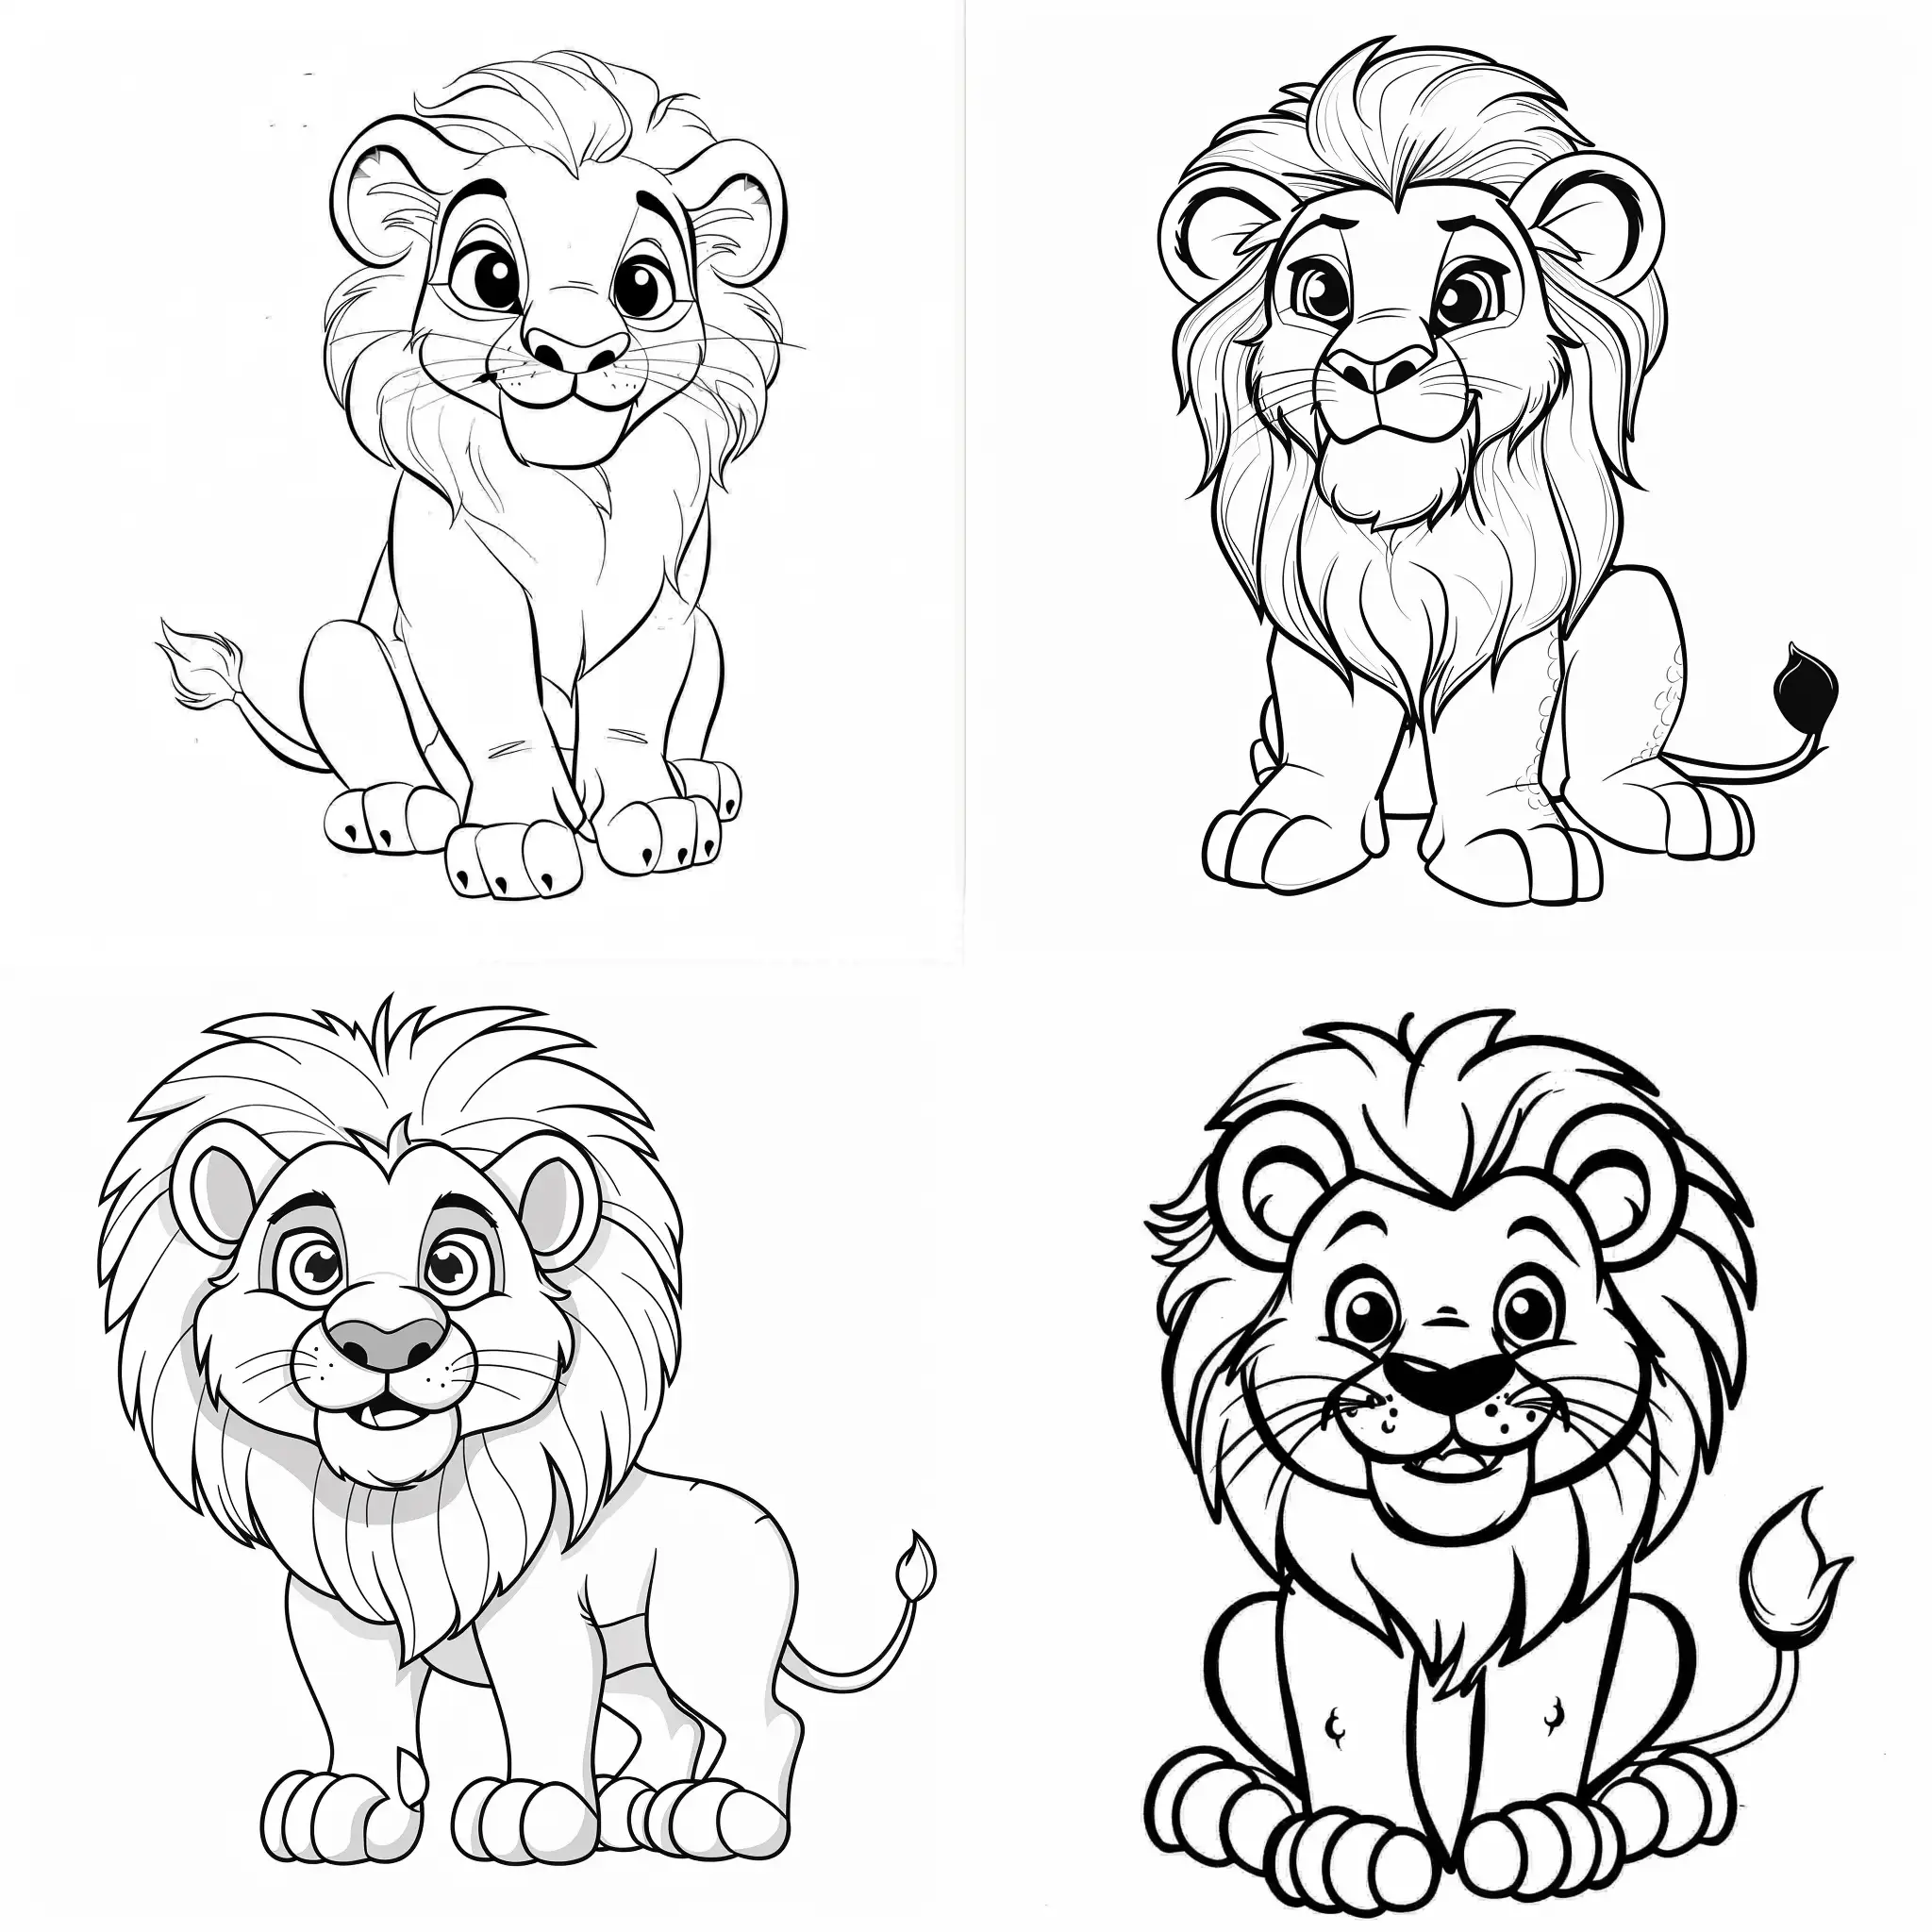 Dibuja un león que sea lindo y sencillo para libro de colorear de niños pequeños, sin escalas de grises en una hoja blanca con fondo liso sin dibujos. el león debe ser de aspecto agradable y amigable.